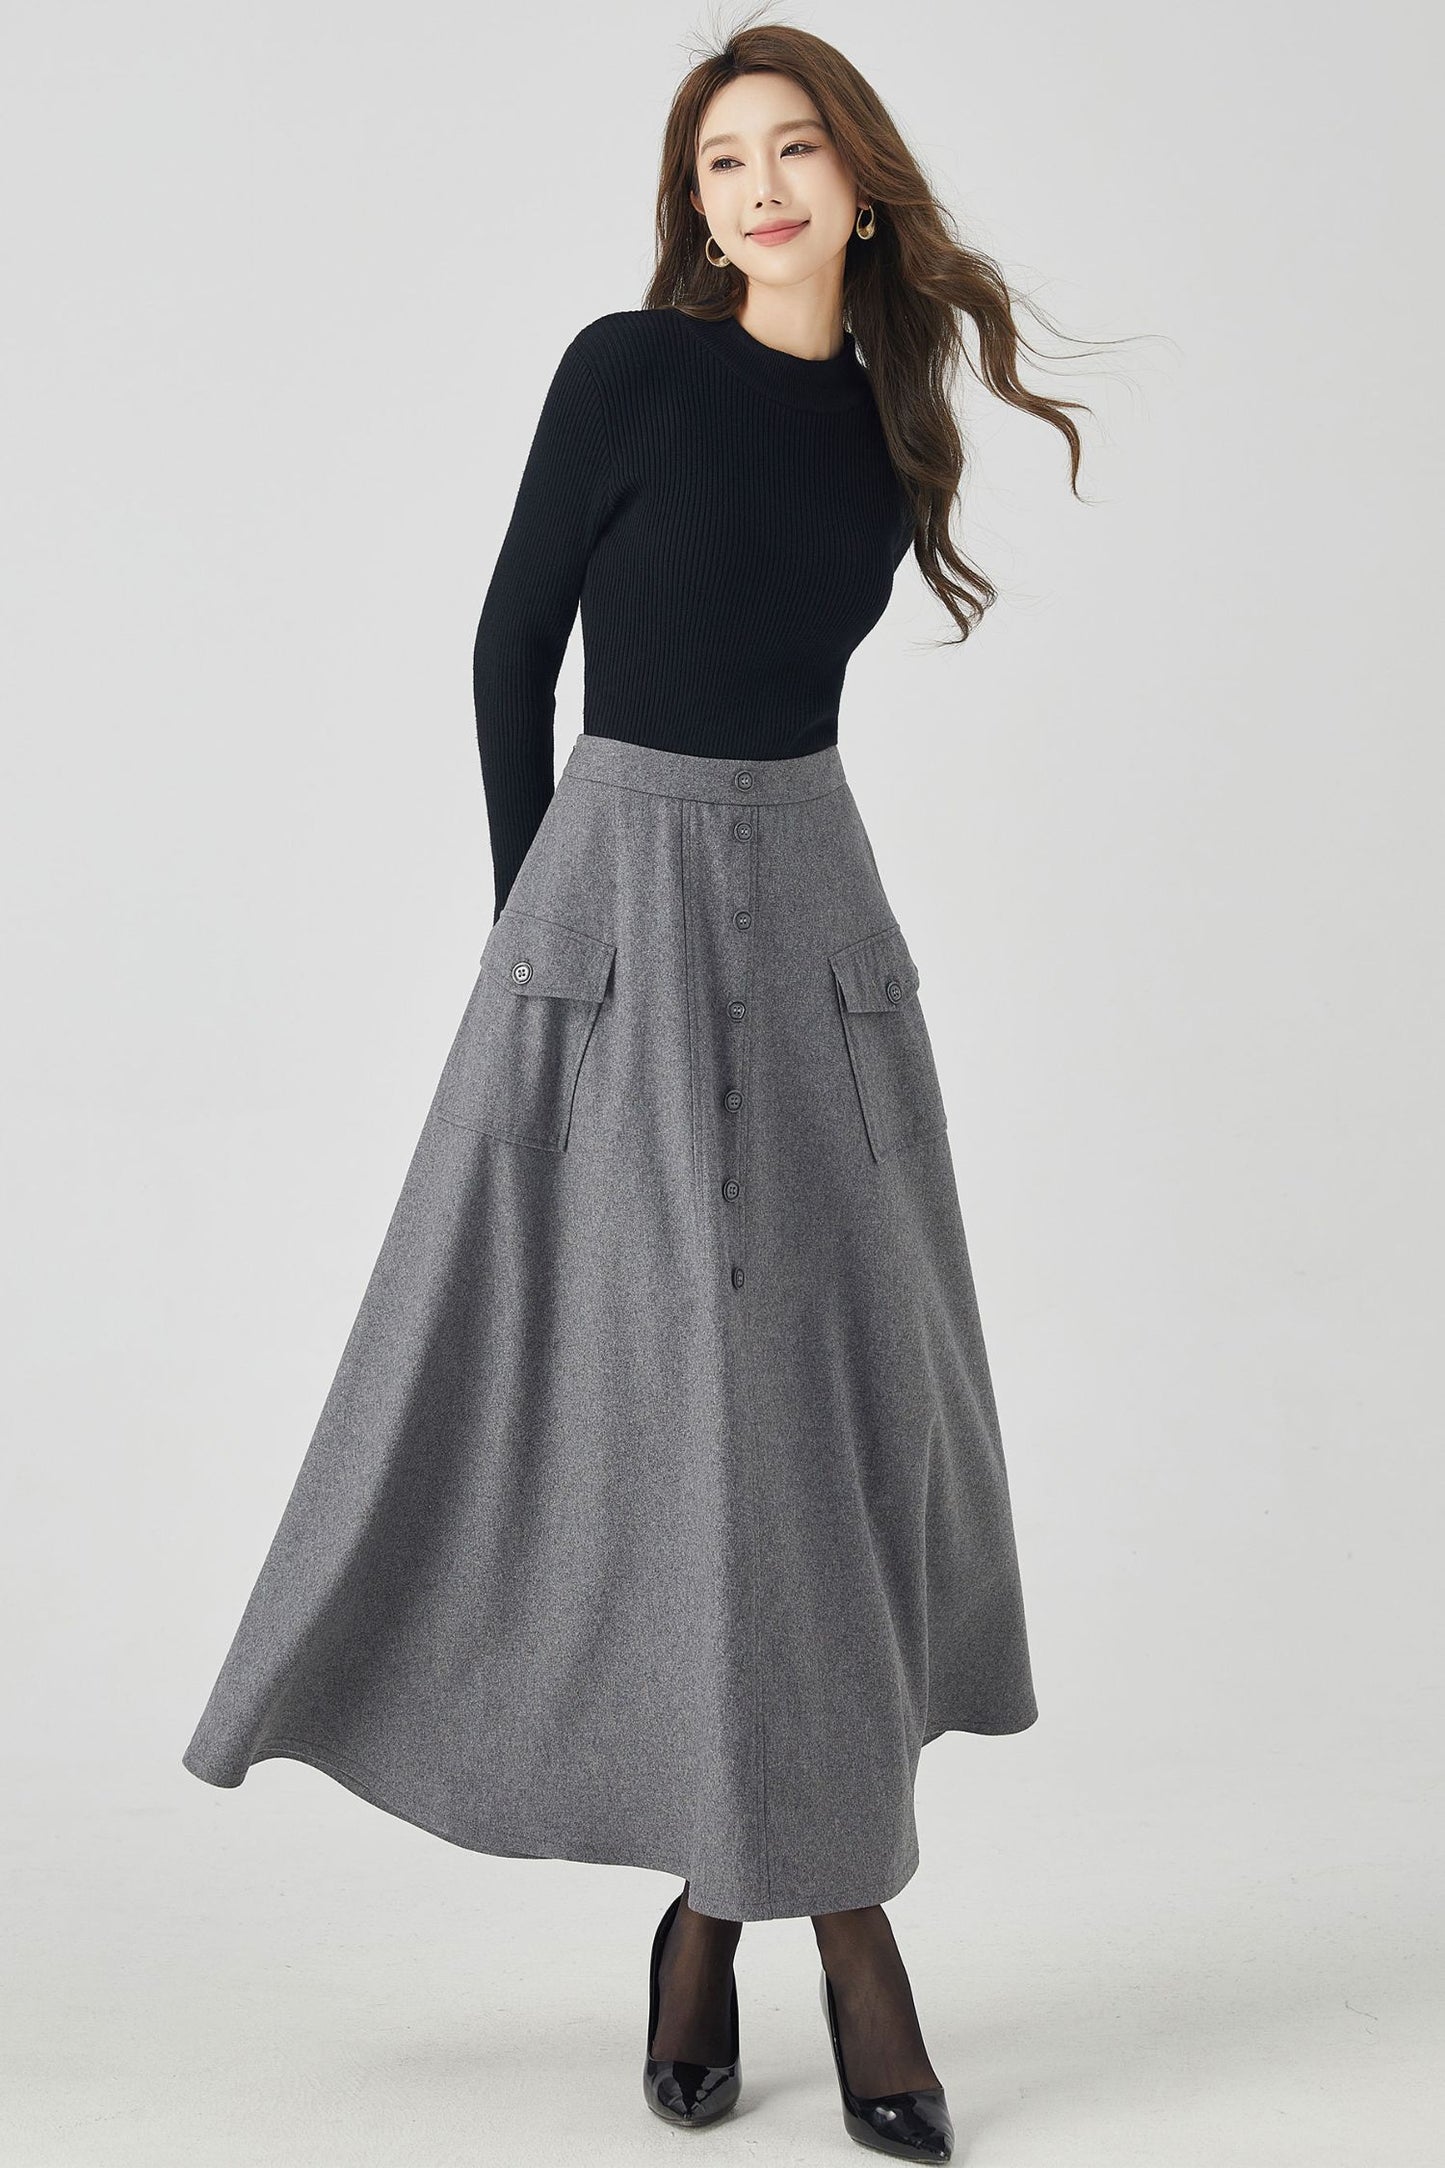 Gray a line long wool winter skirt 4529